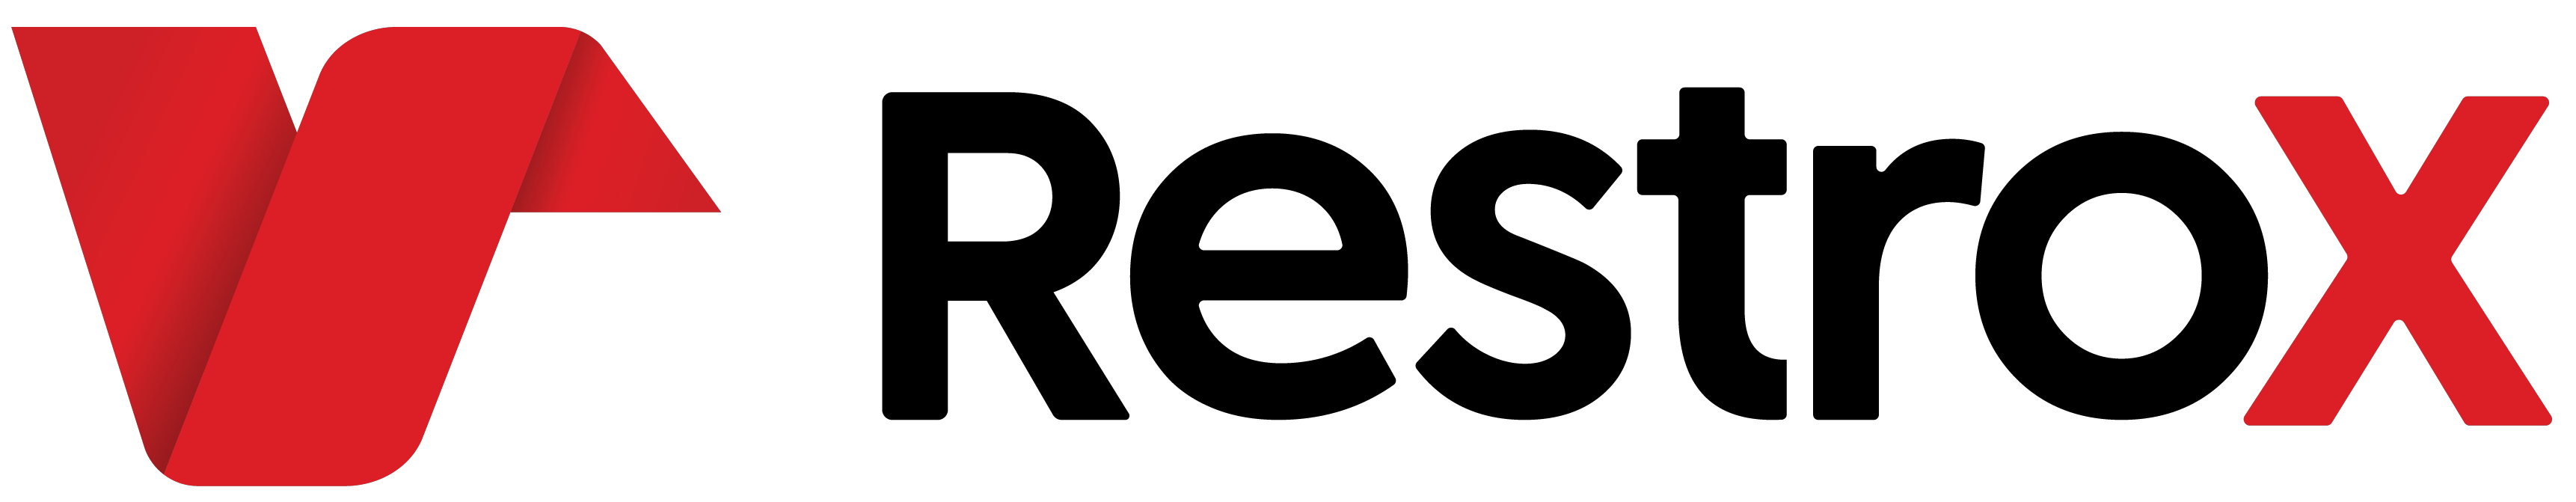 RestroX-logo-desktop-logo